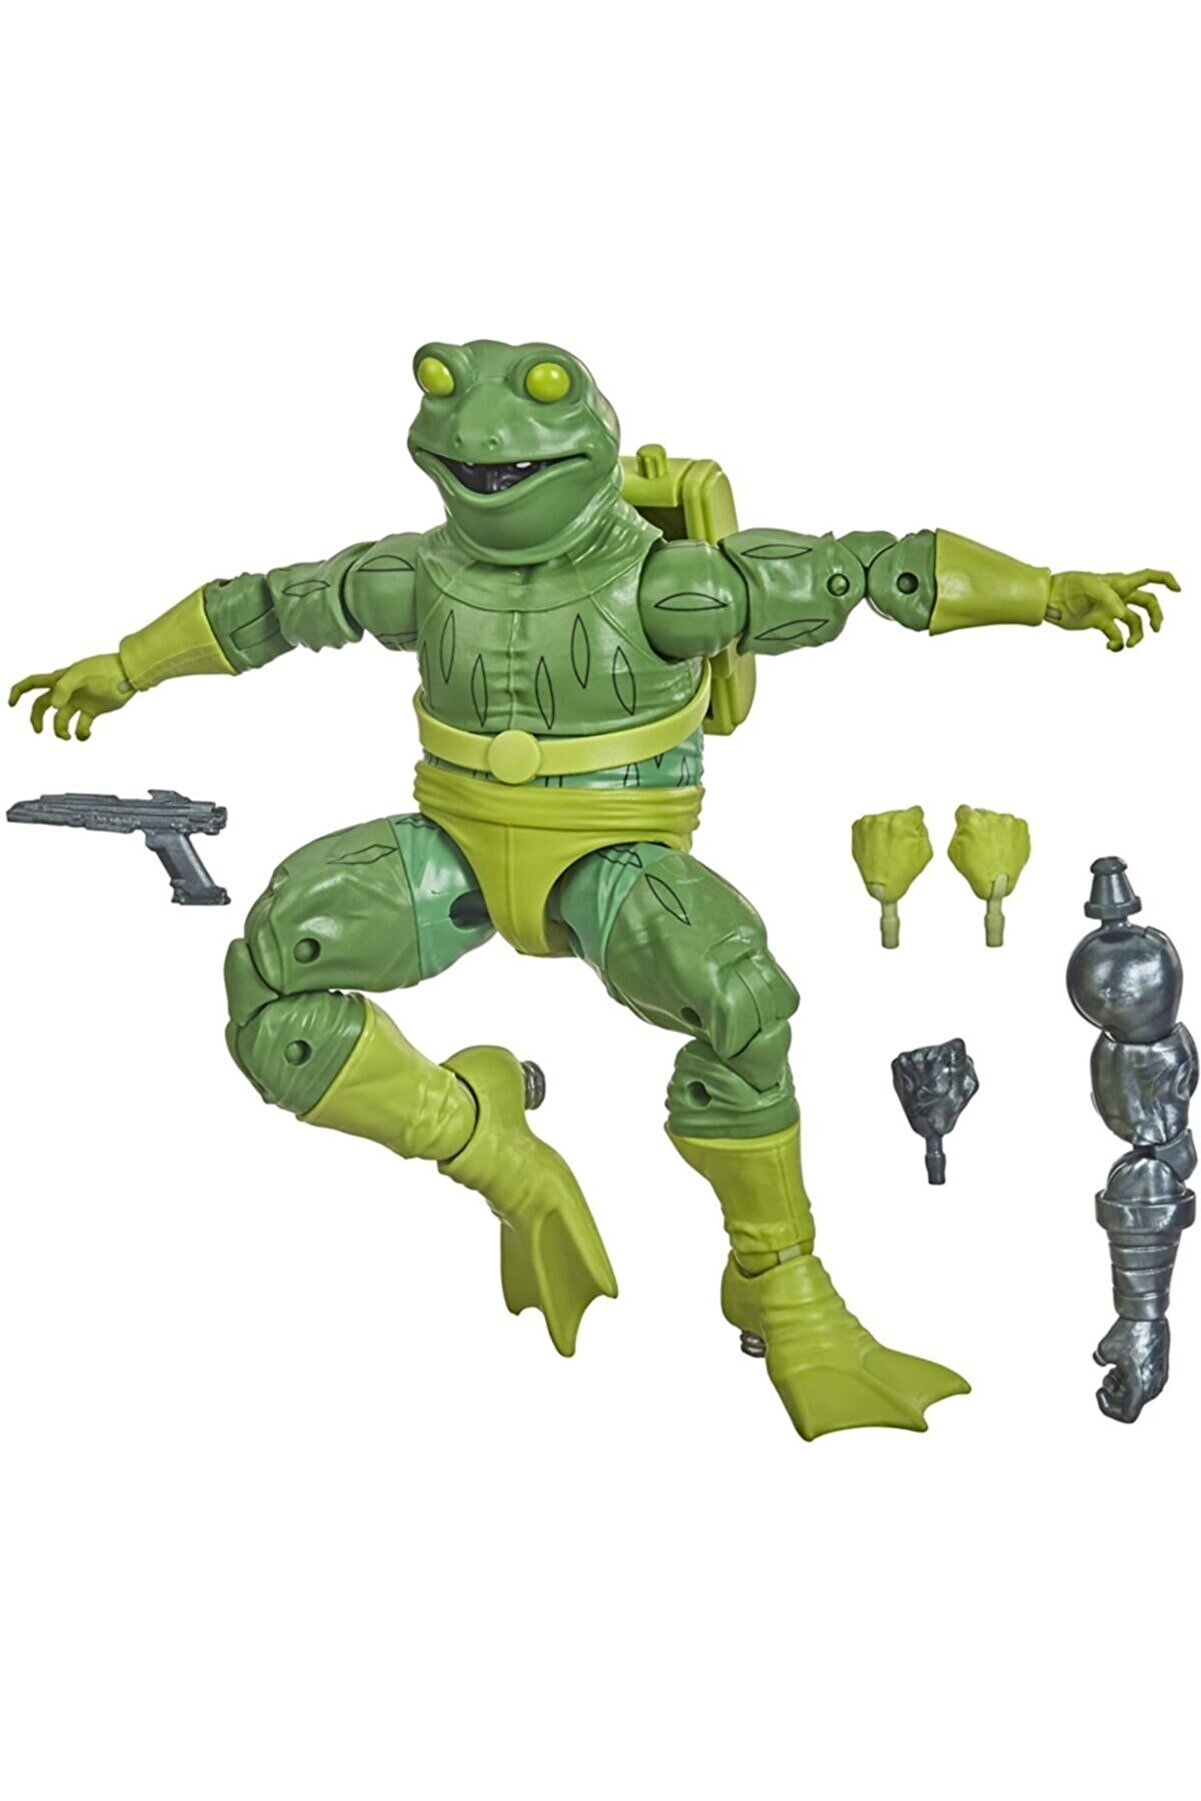 Hasbro Marvel Legends Series Marvels Frog-man Action Figure